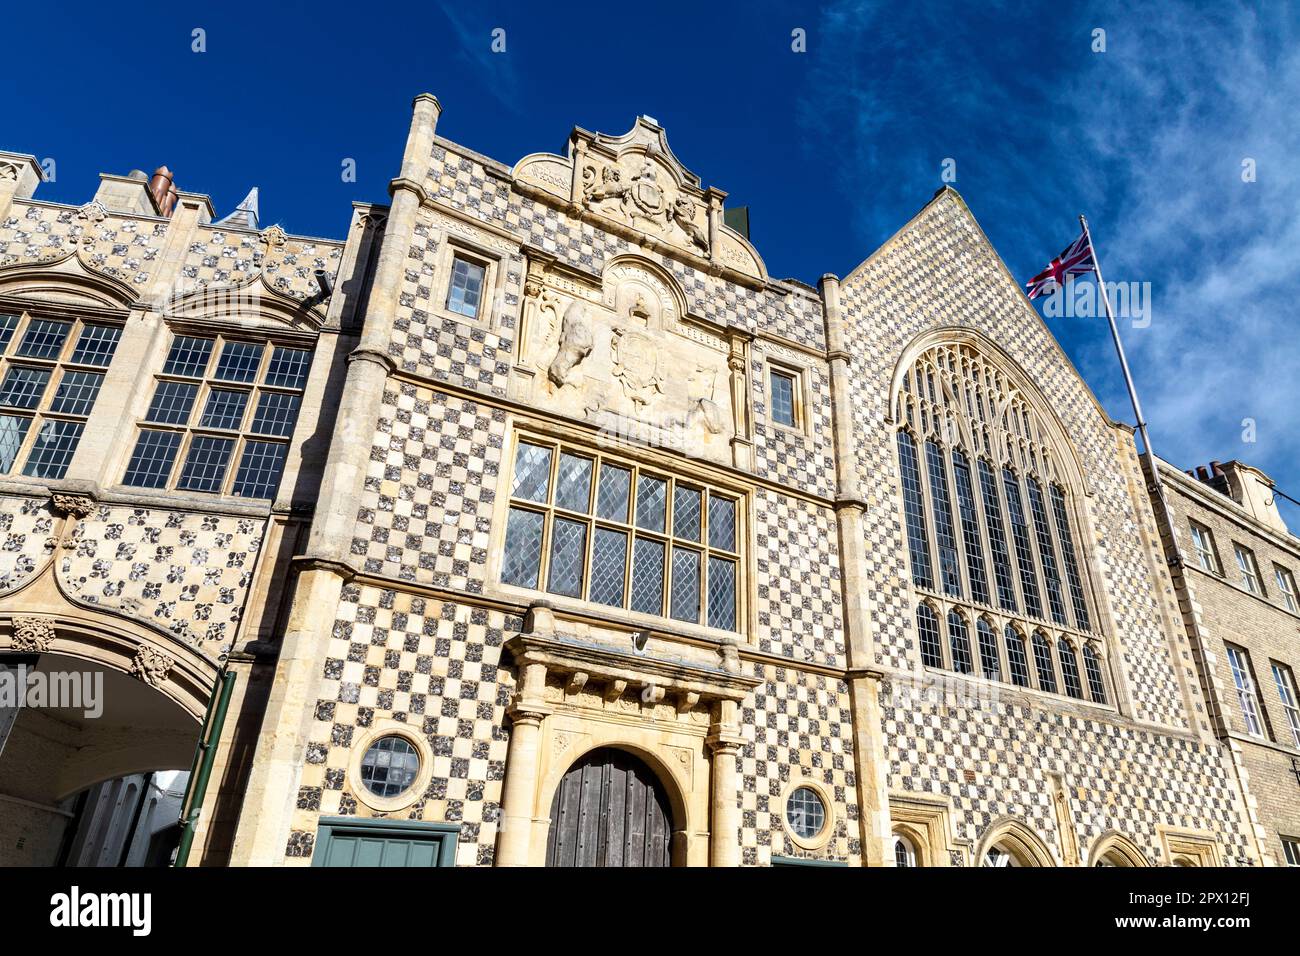 Außenansicht des 15.. Jahrhunderts alten Gefängnis-Hauses mit Unterkünften Stories of Lynn Museum and Old Jail Cells, King's Lynn, Norfolk, England, Großbritannien Stockfoto